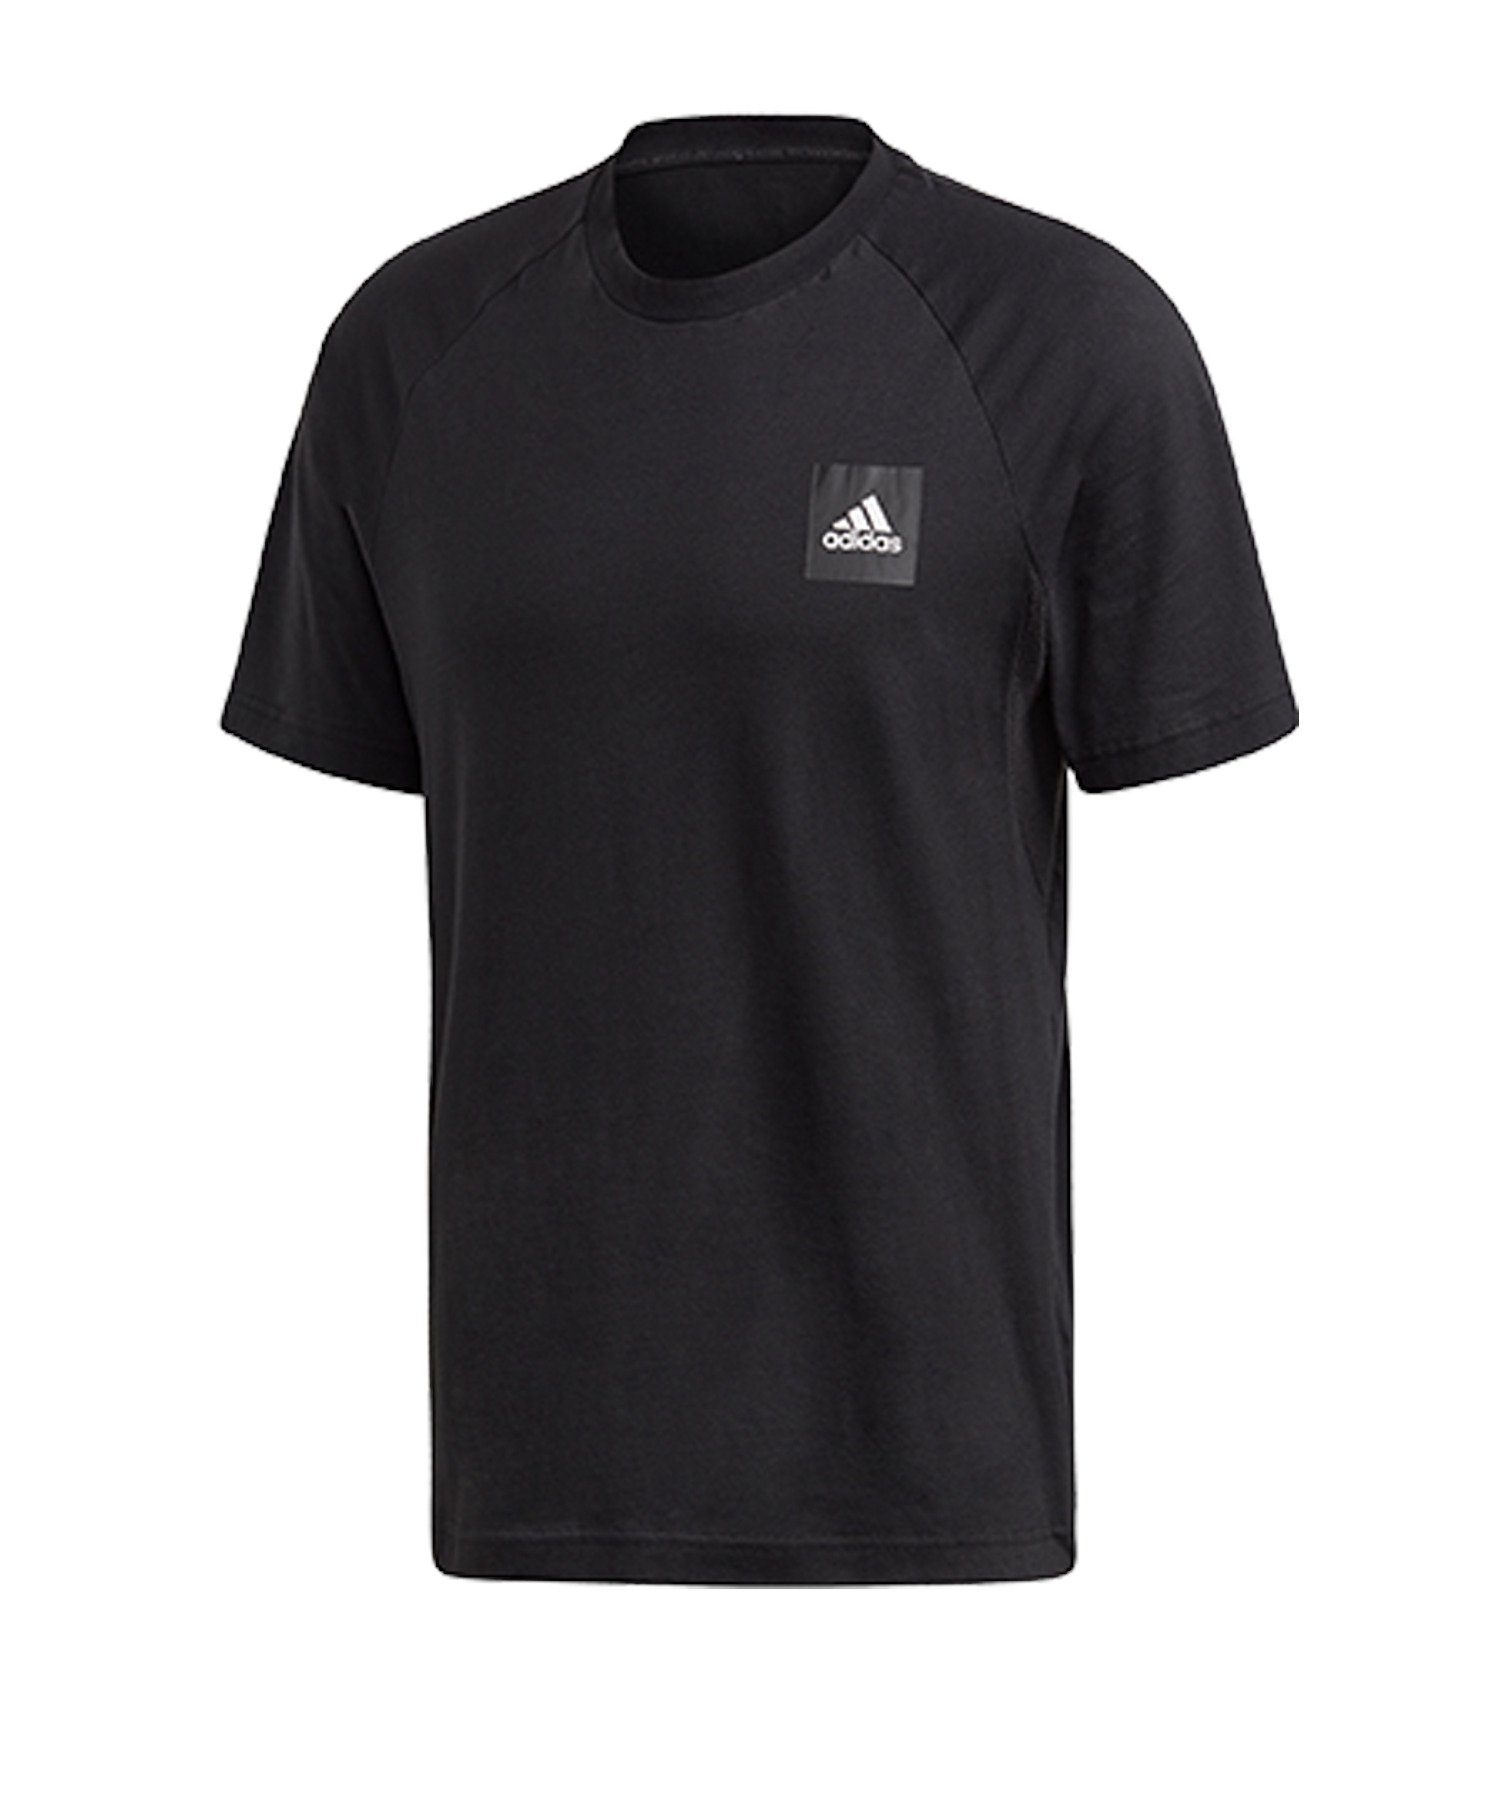 adidas Performance T-Shirt MH T-Shirt default schwarz